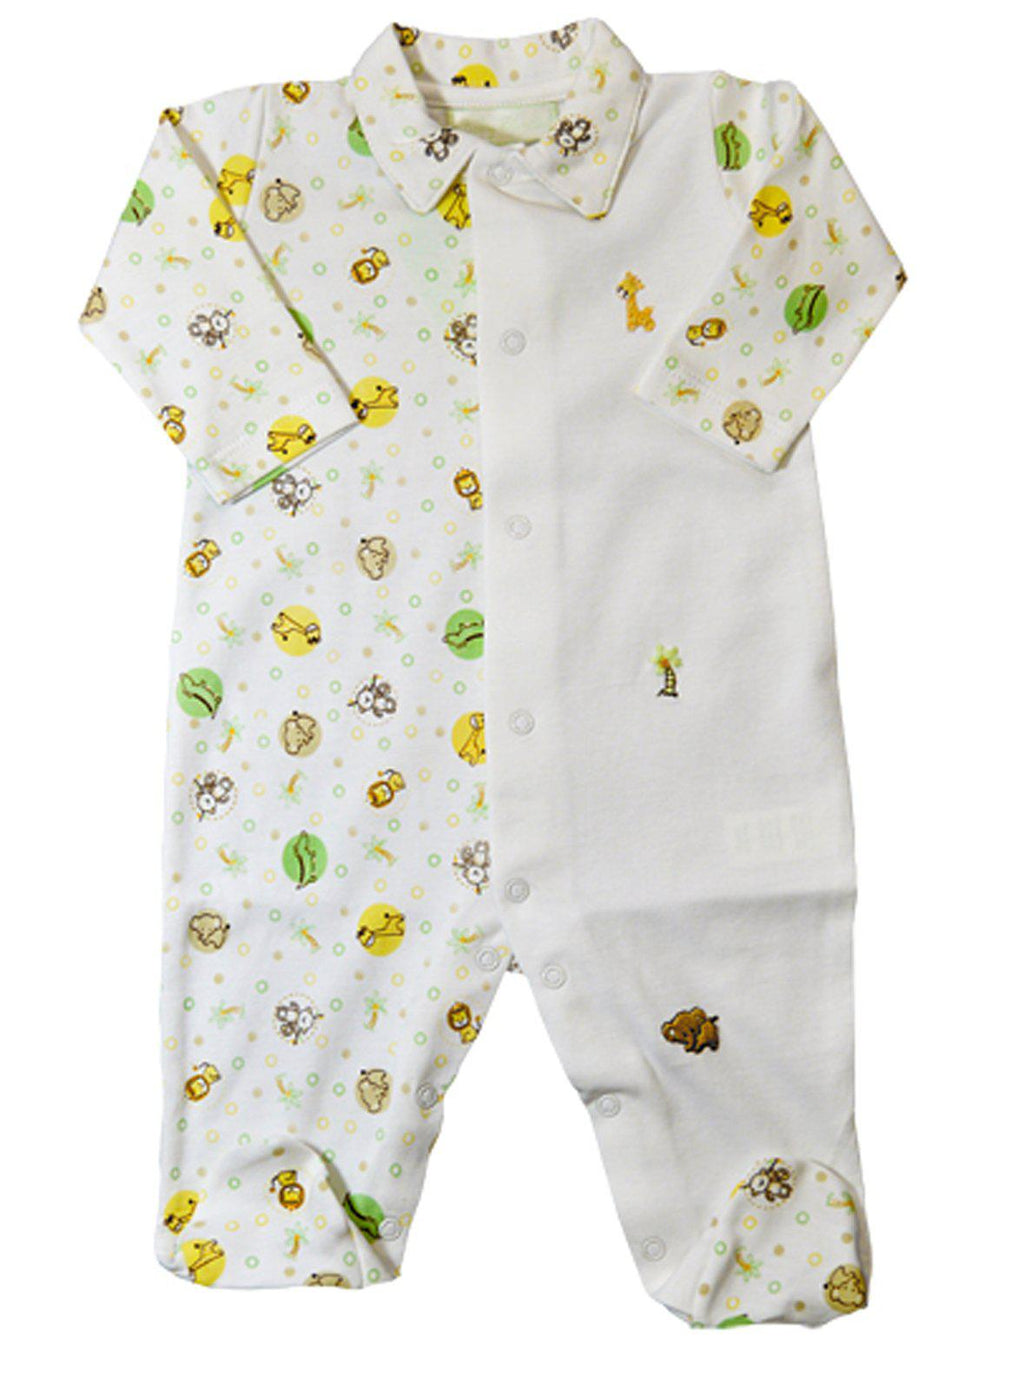 Baby Threads Jungle baby boy Footie - Little Threads Inc. Children's Clothing